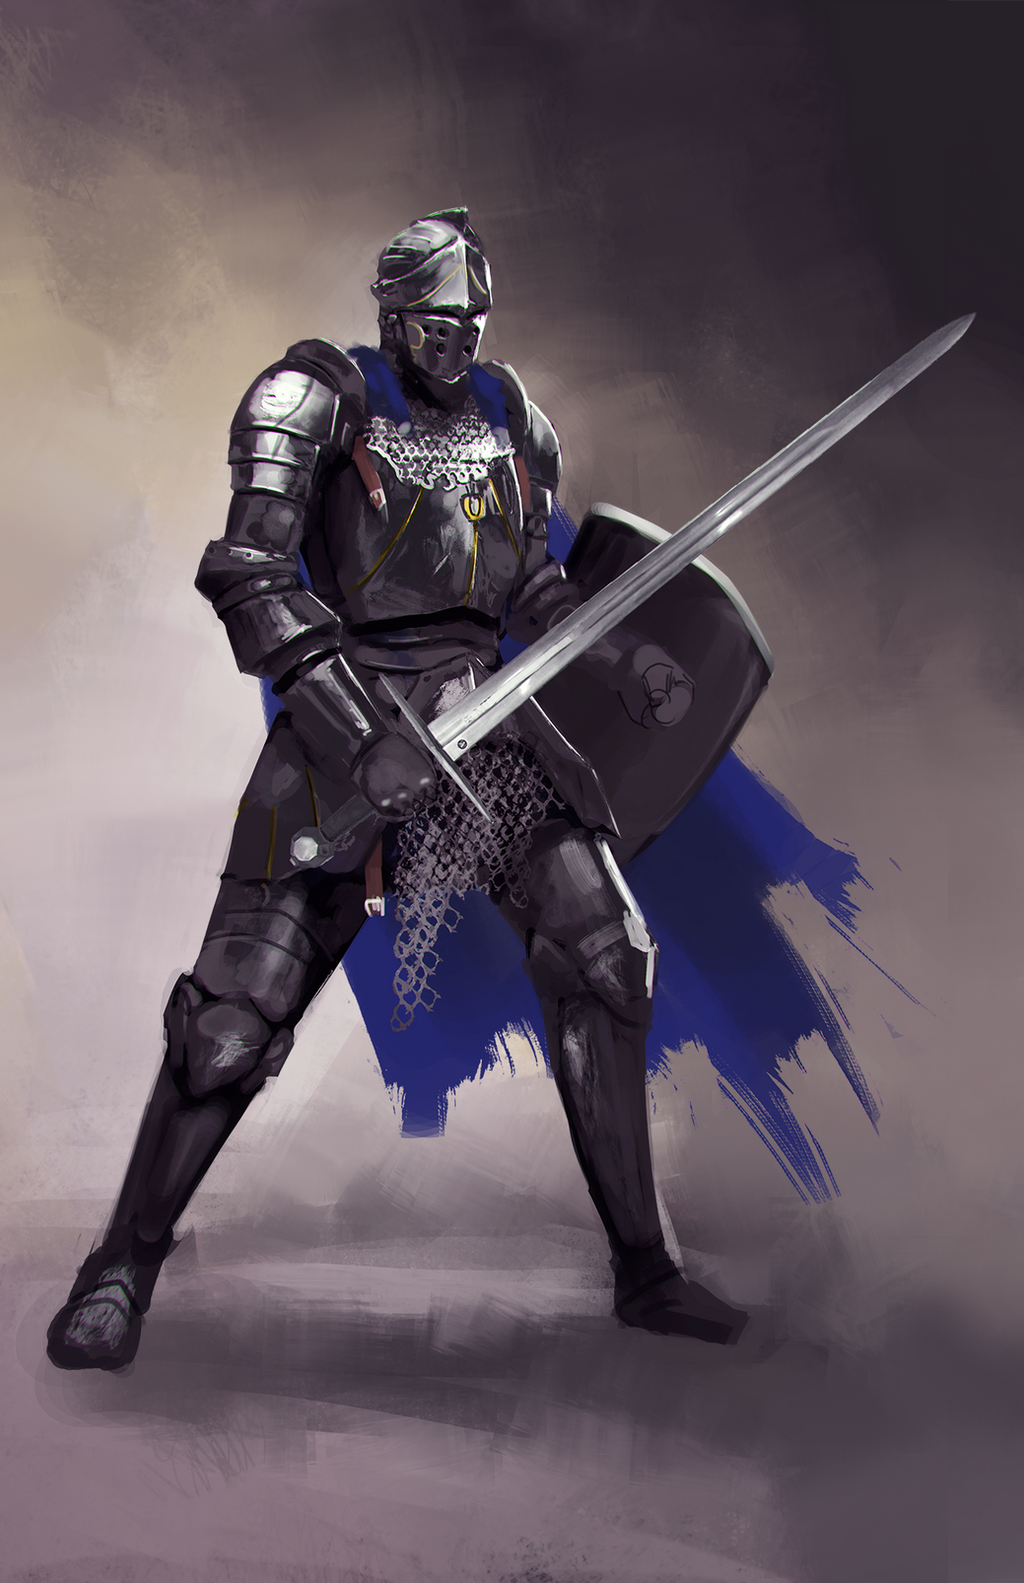 Medieval Knight Pic - KibrisPDR